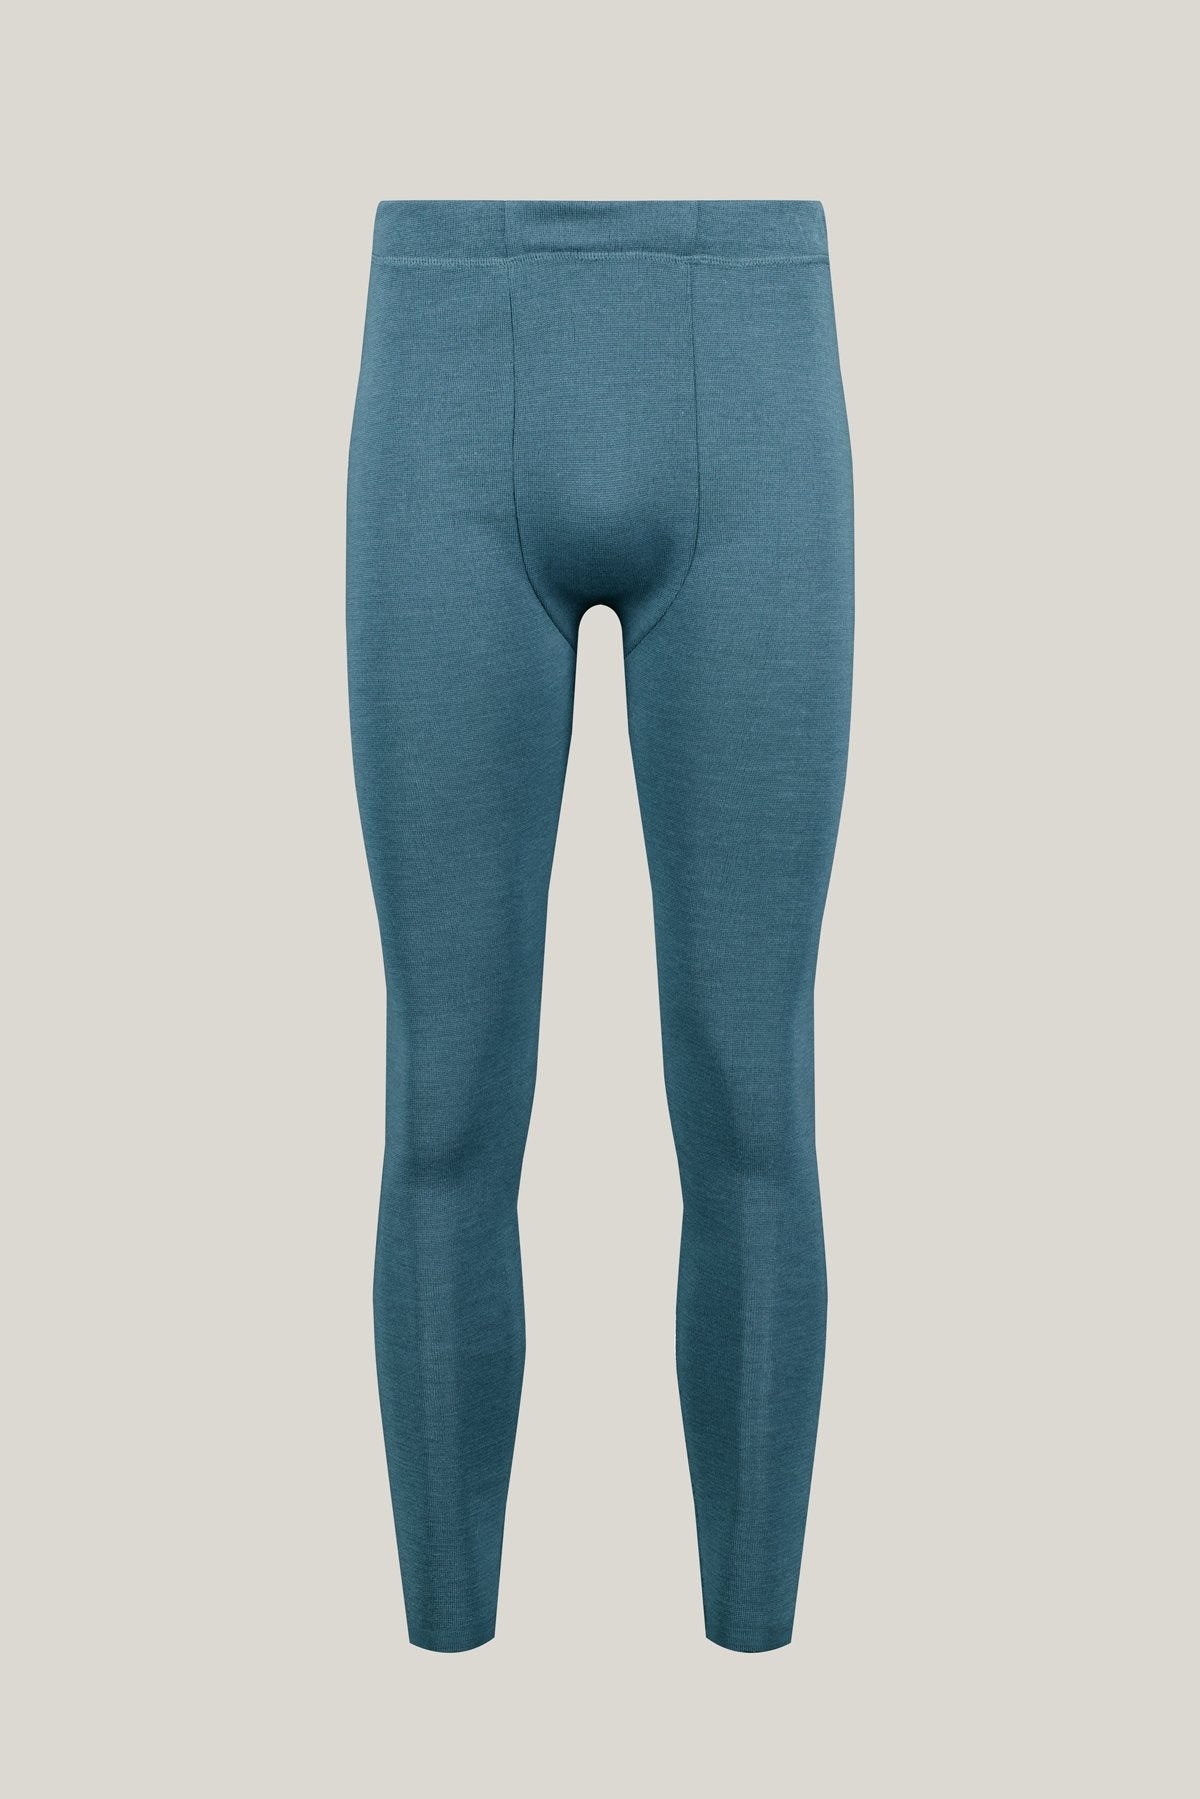 Gray-blue Axel leggings made of Merino &amp; Tencel from Tidløs